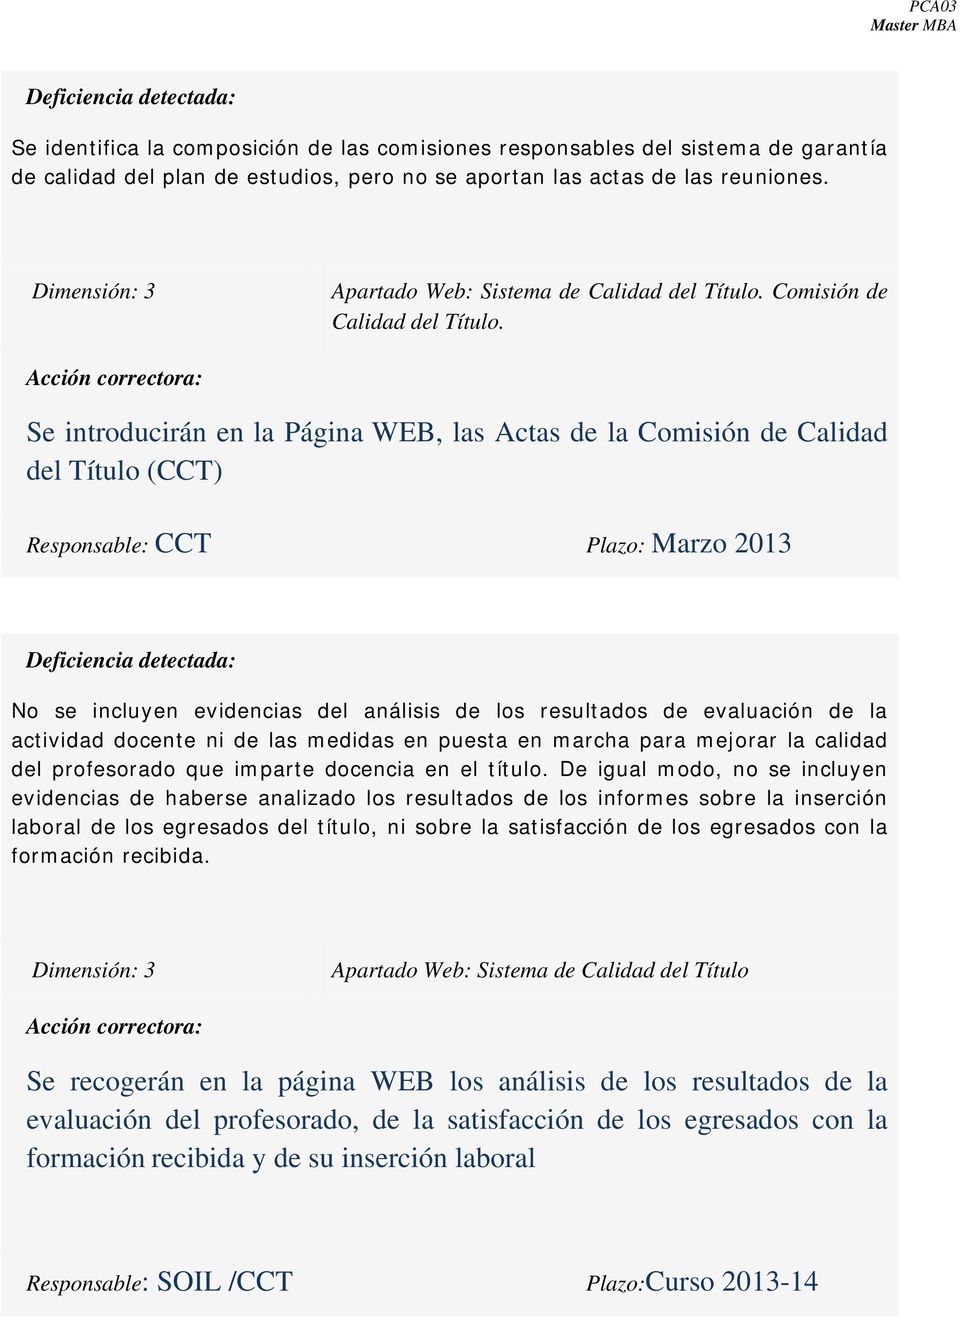 Se introducirán en la Página WEB, las Actas de la Comisión de Calidad del Título (CCT) Responsable: CCT Plazo: Marzo 2013 No se incluyen evidencias del análisis de los resultados de evaluación de la